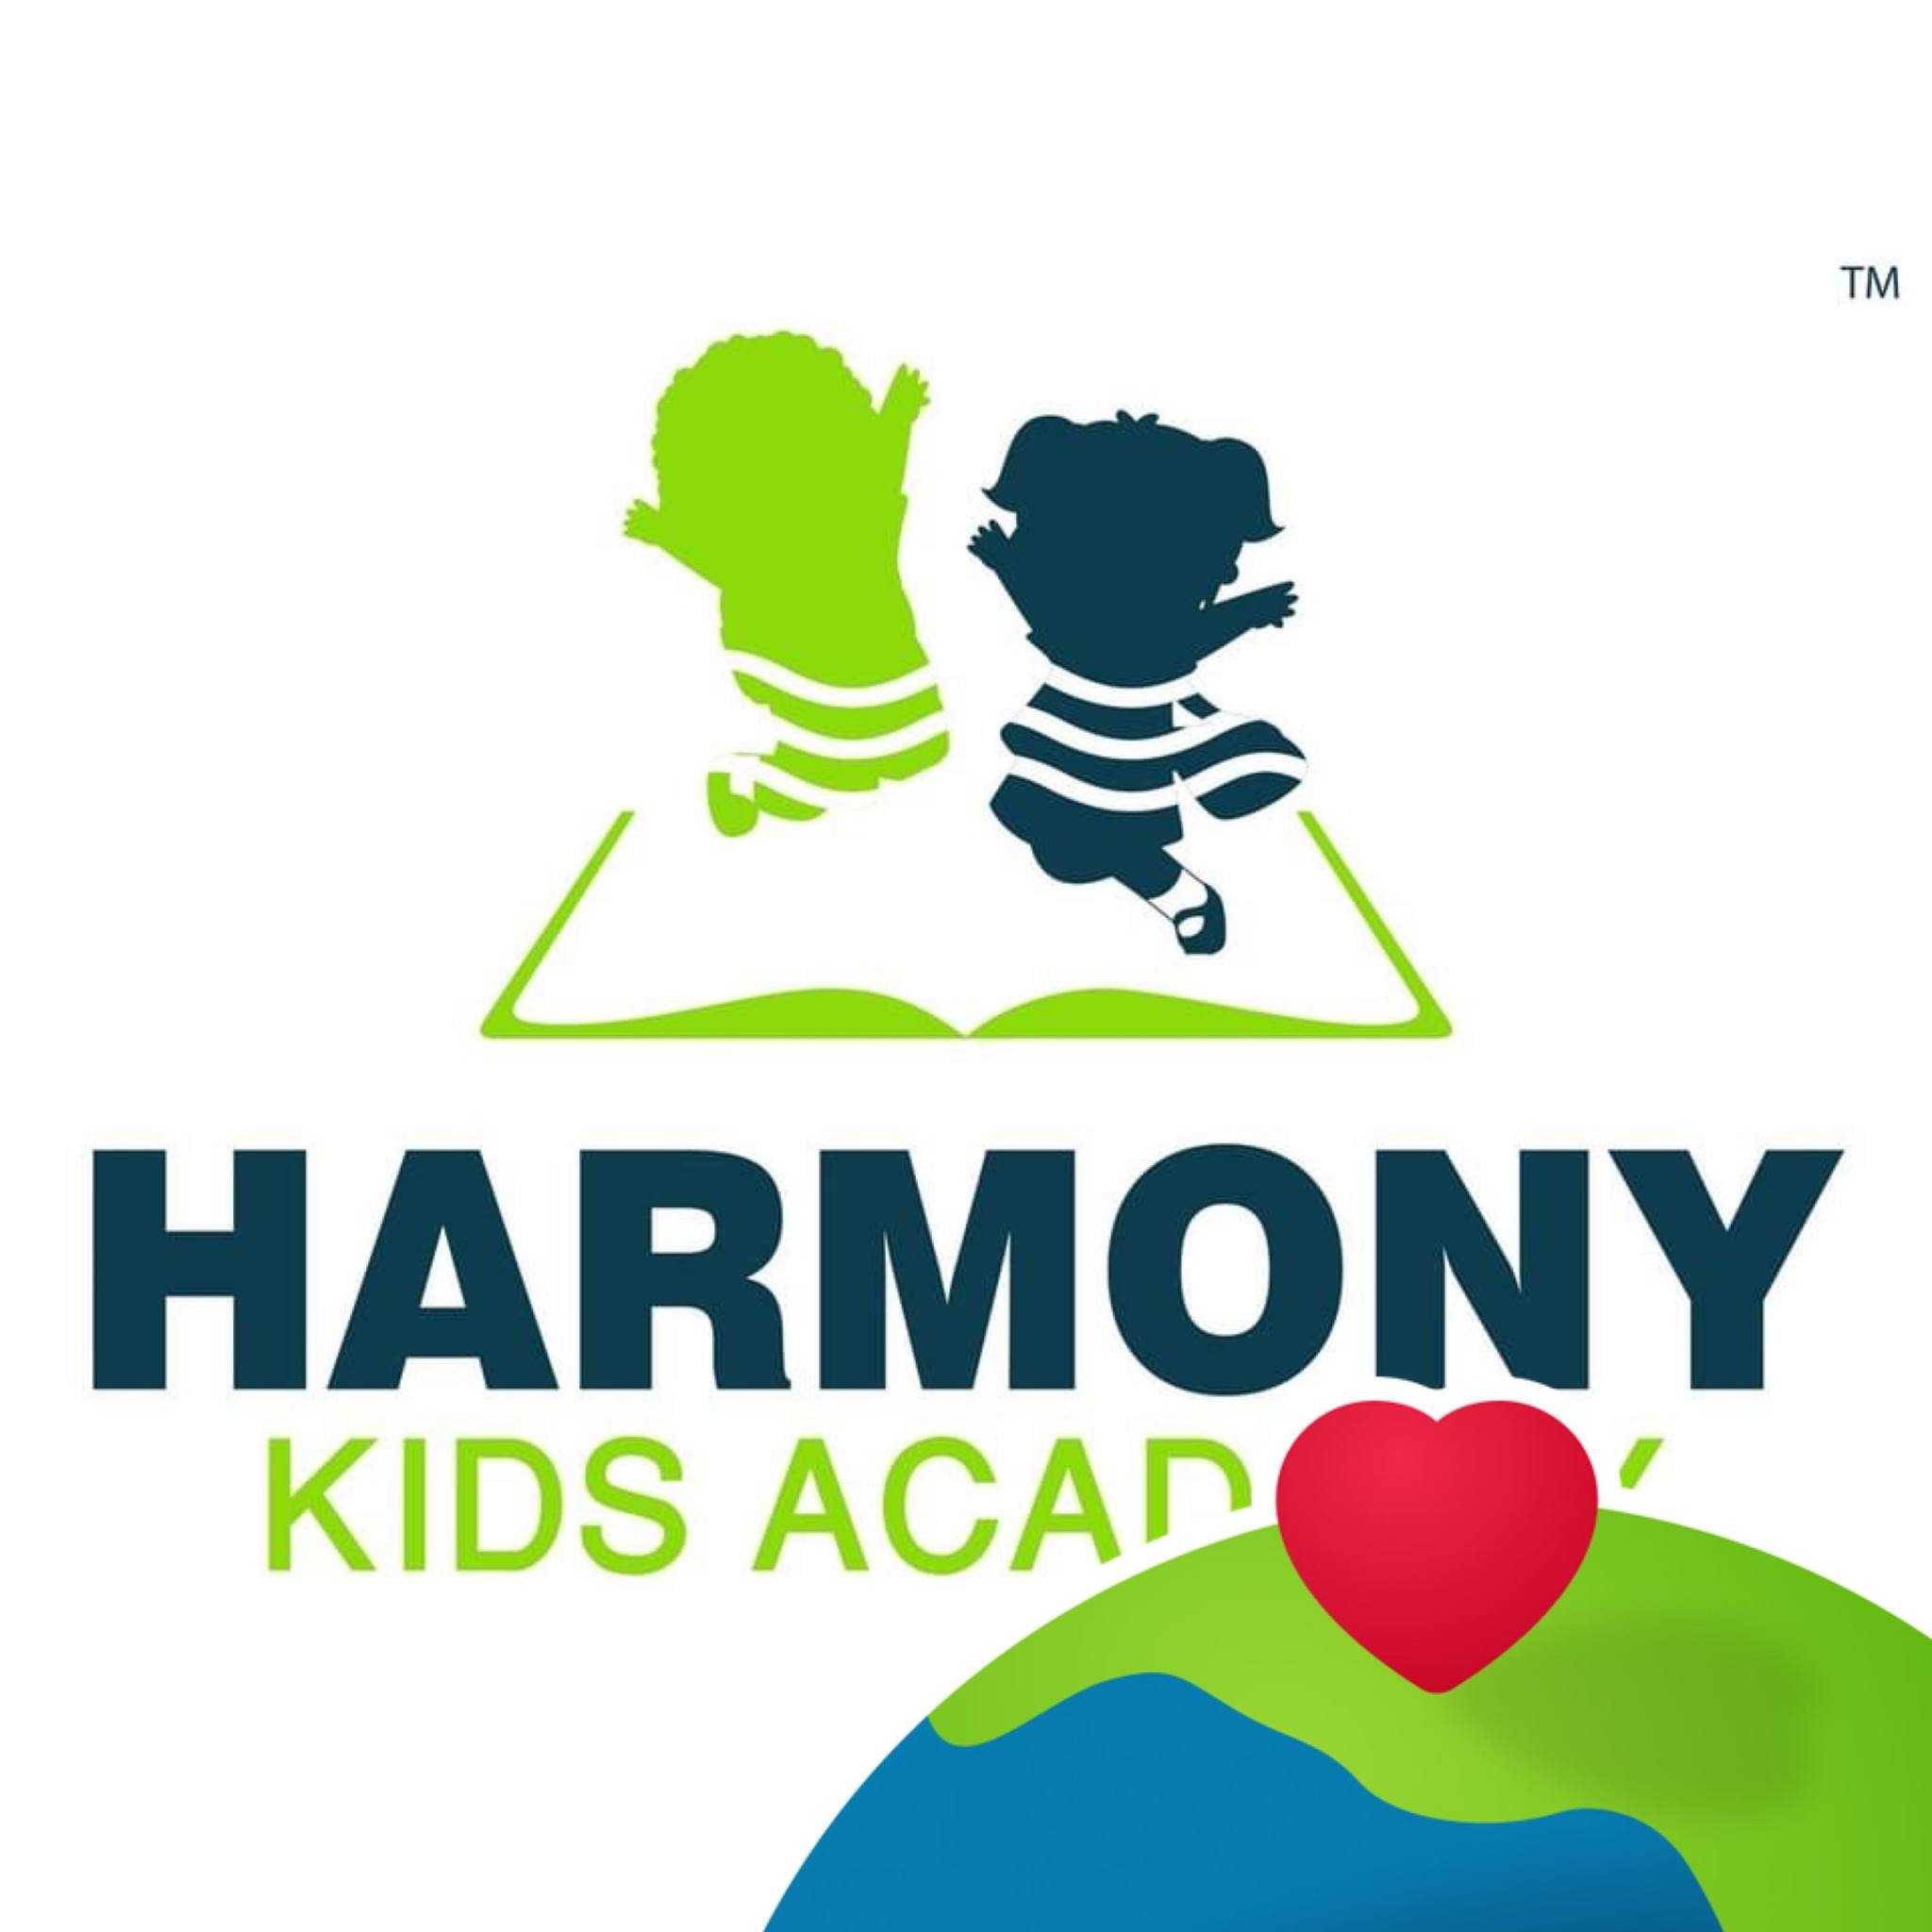 Harmony kids Academy